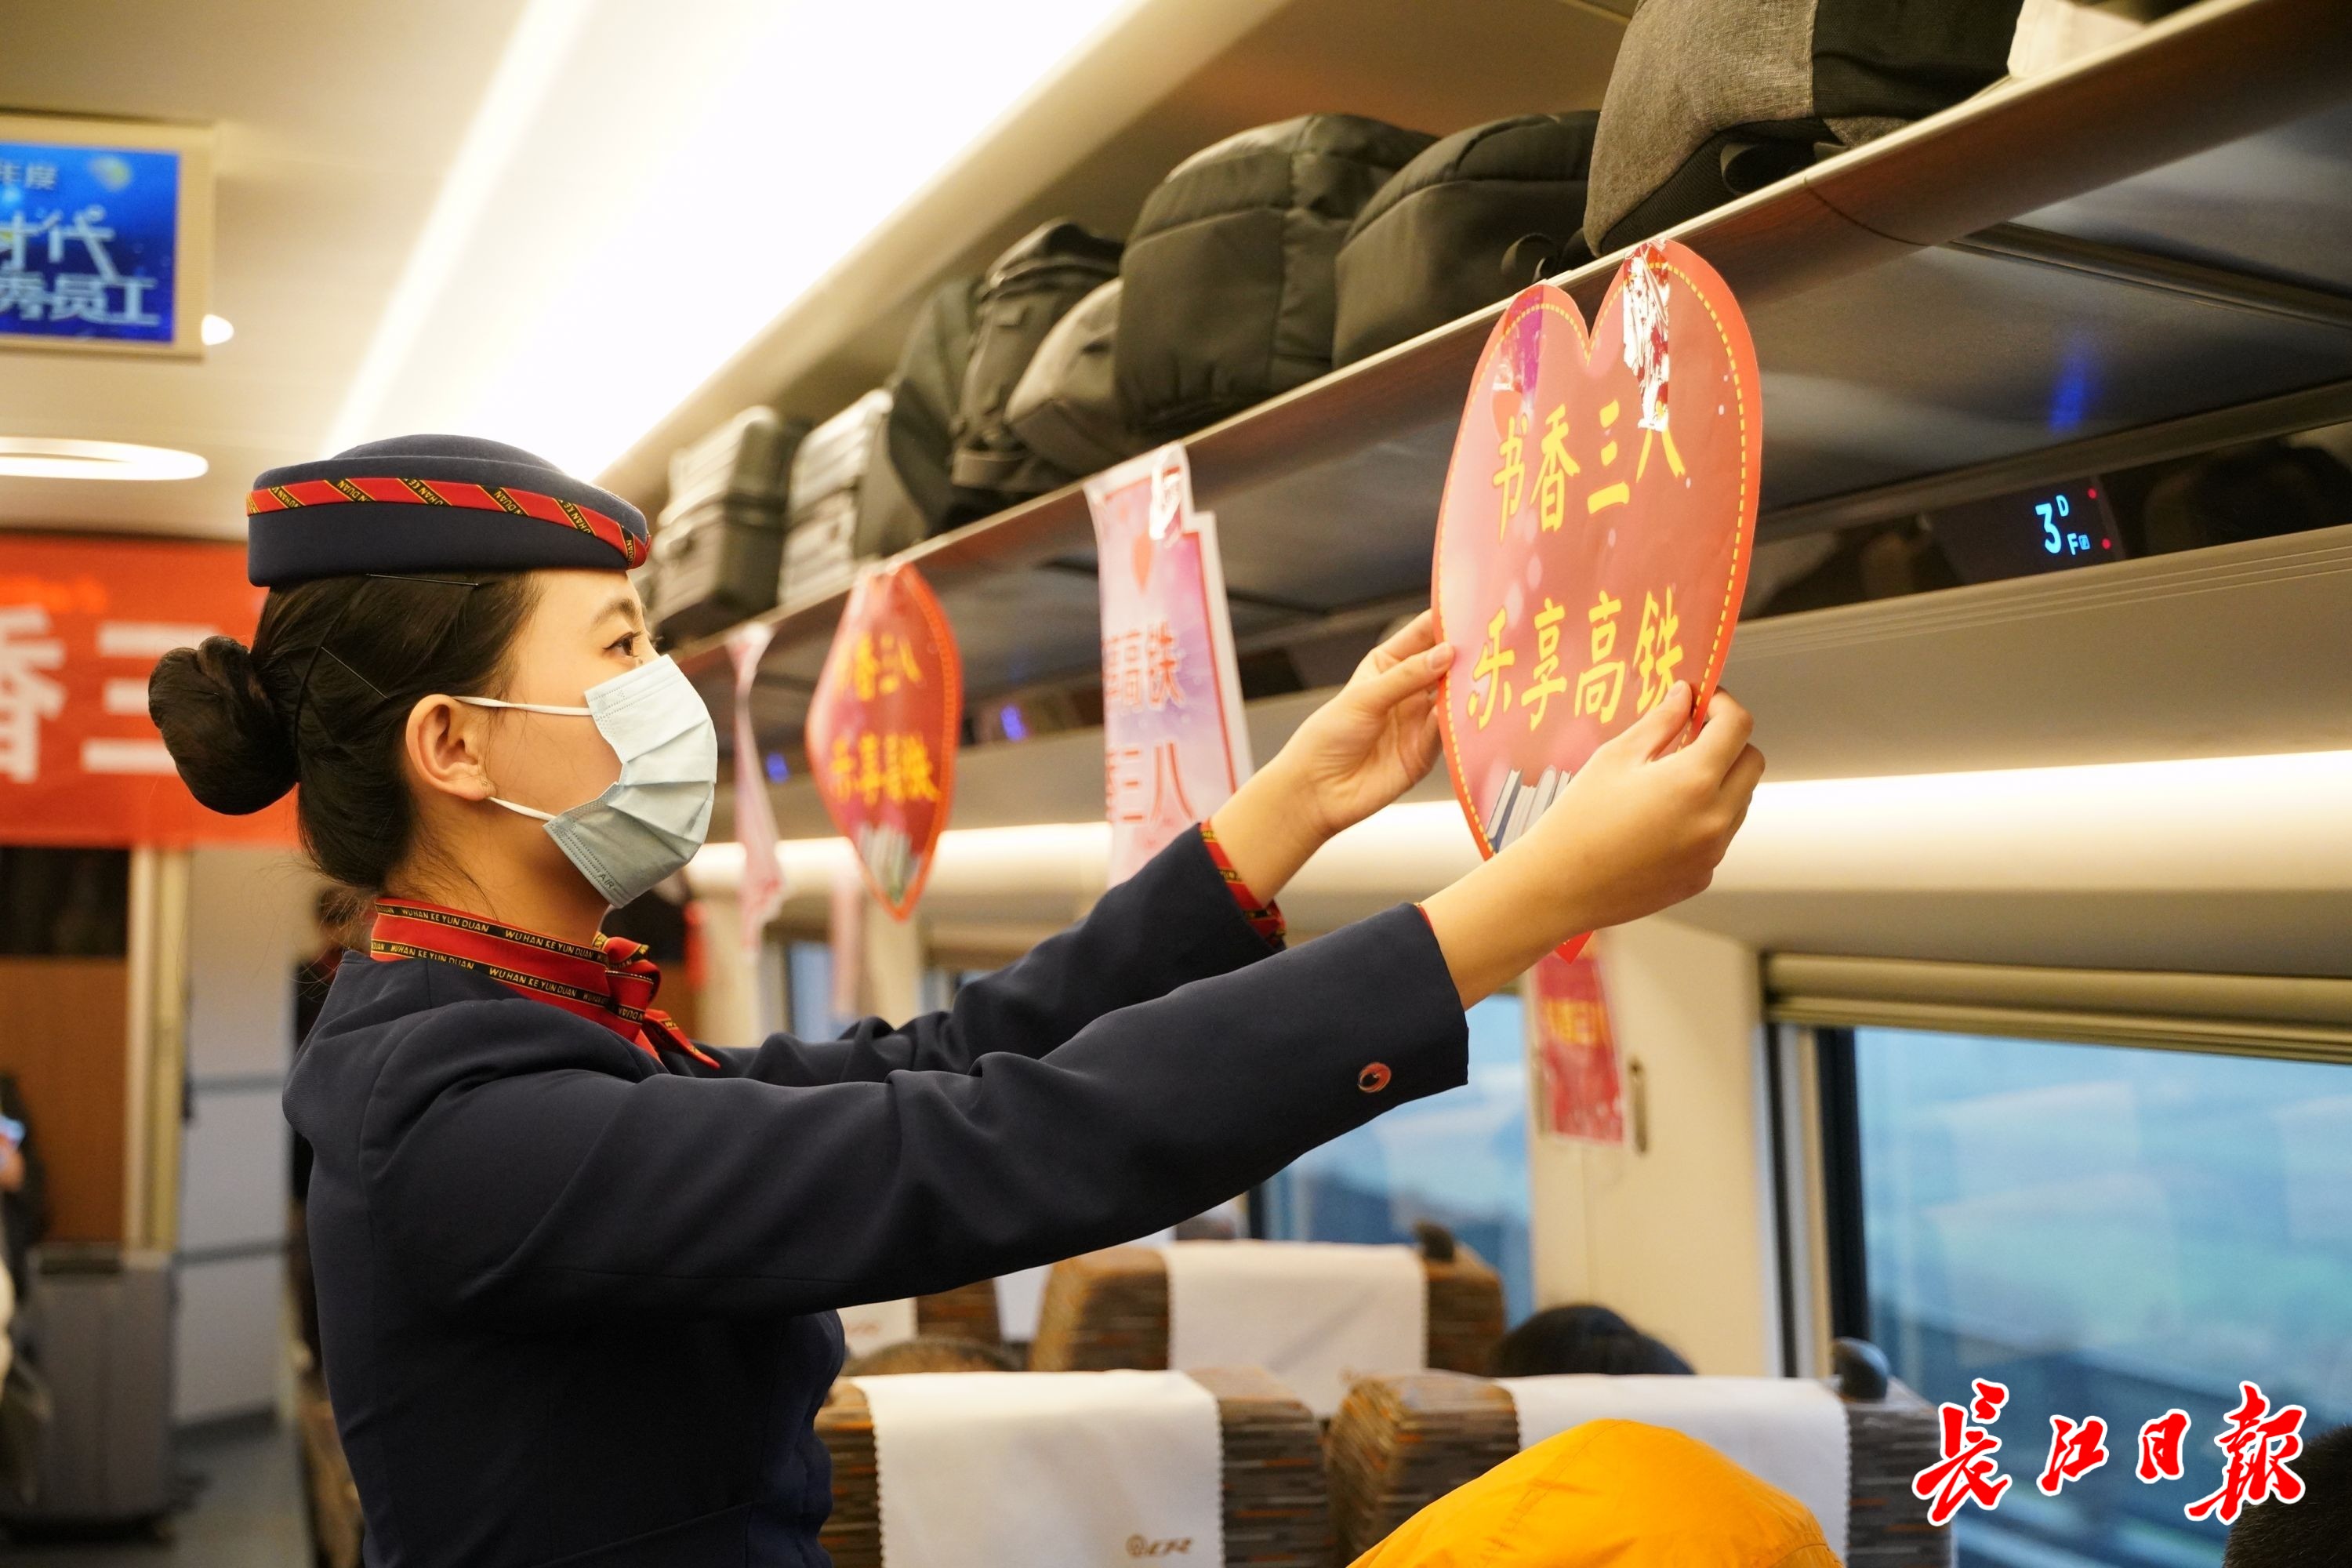 迎接妇女节，高铁列车上举办“书香三八”活动 | 图集